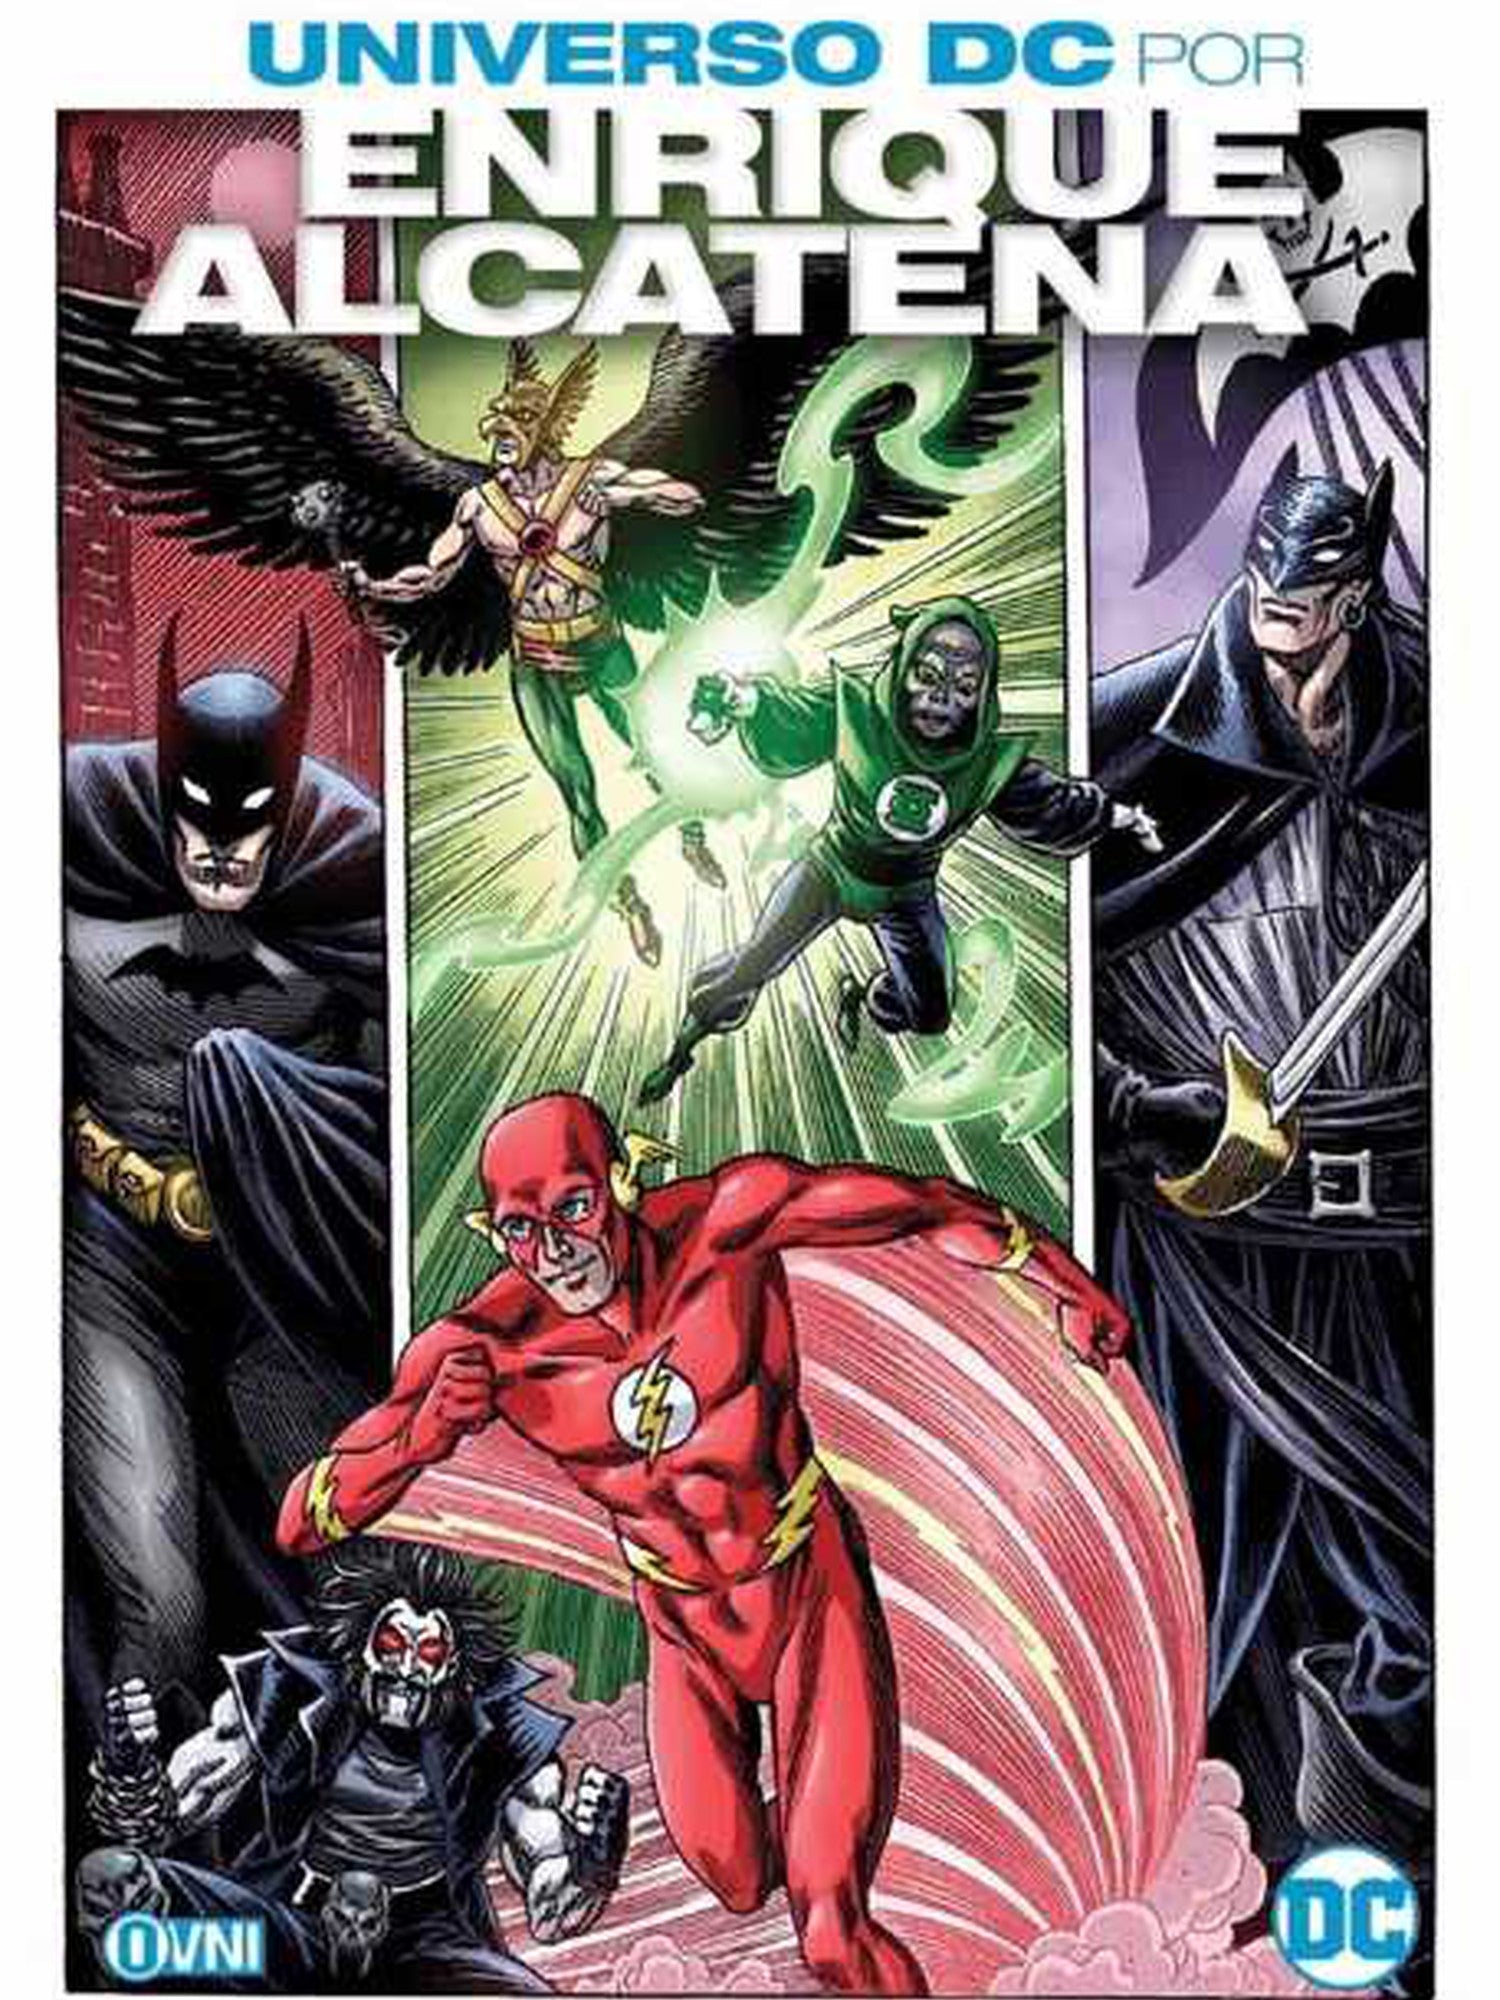 Universo DC Por Enrique Alcatena OVNI Press ENcuadrocomics